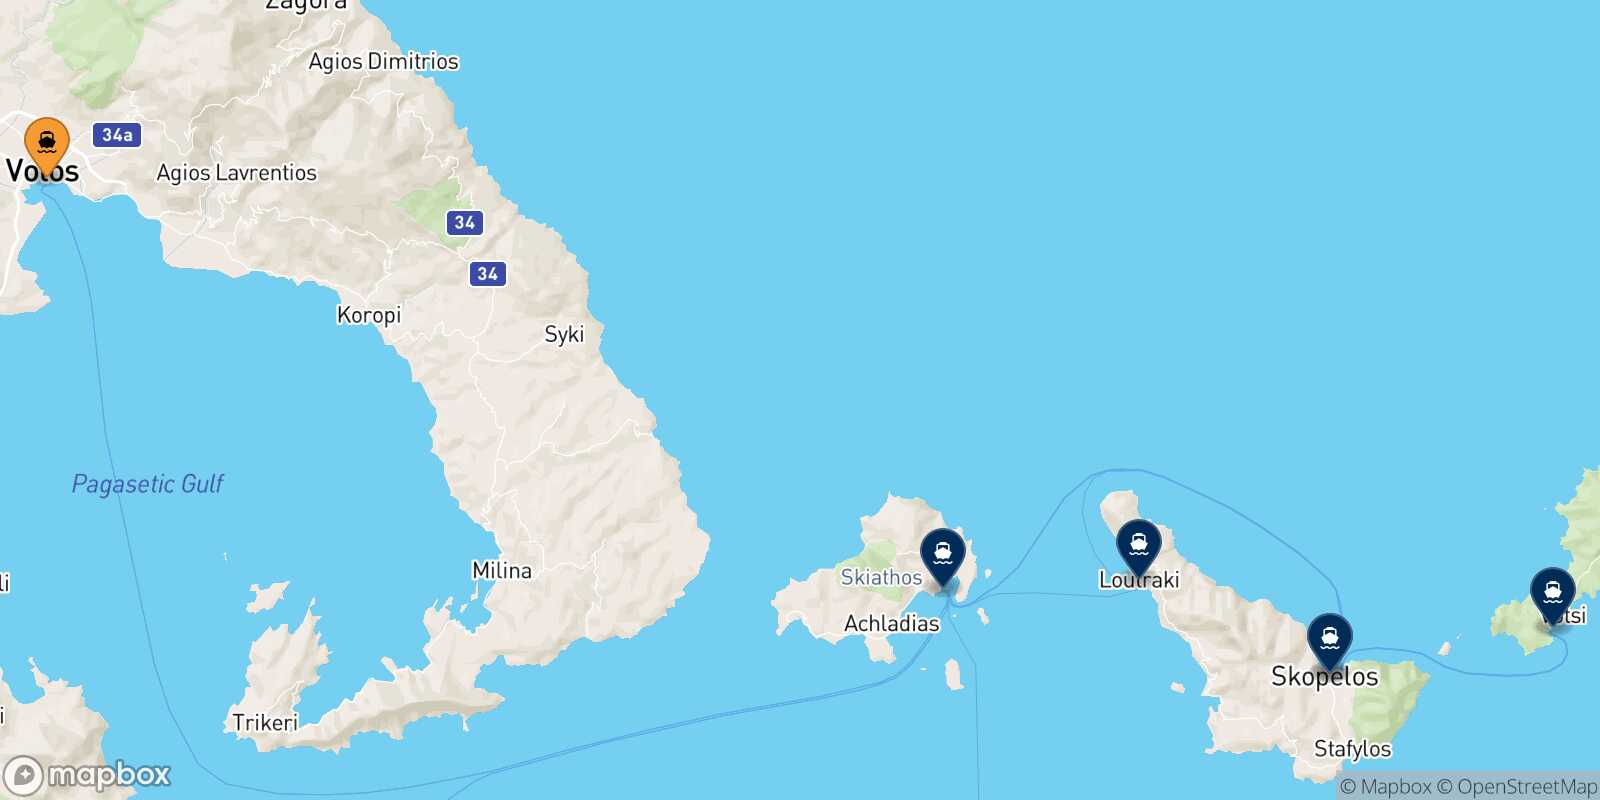 Mappa delle destinazioni raggiungibili da Volos